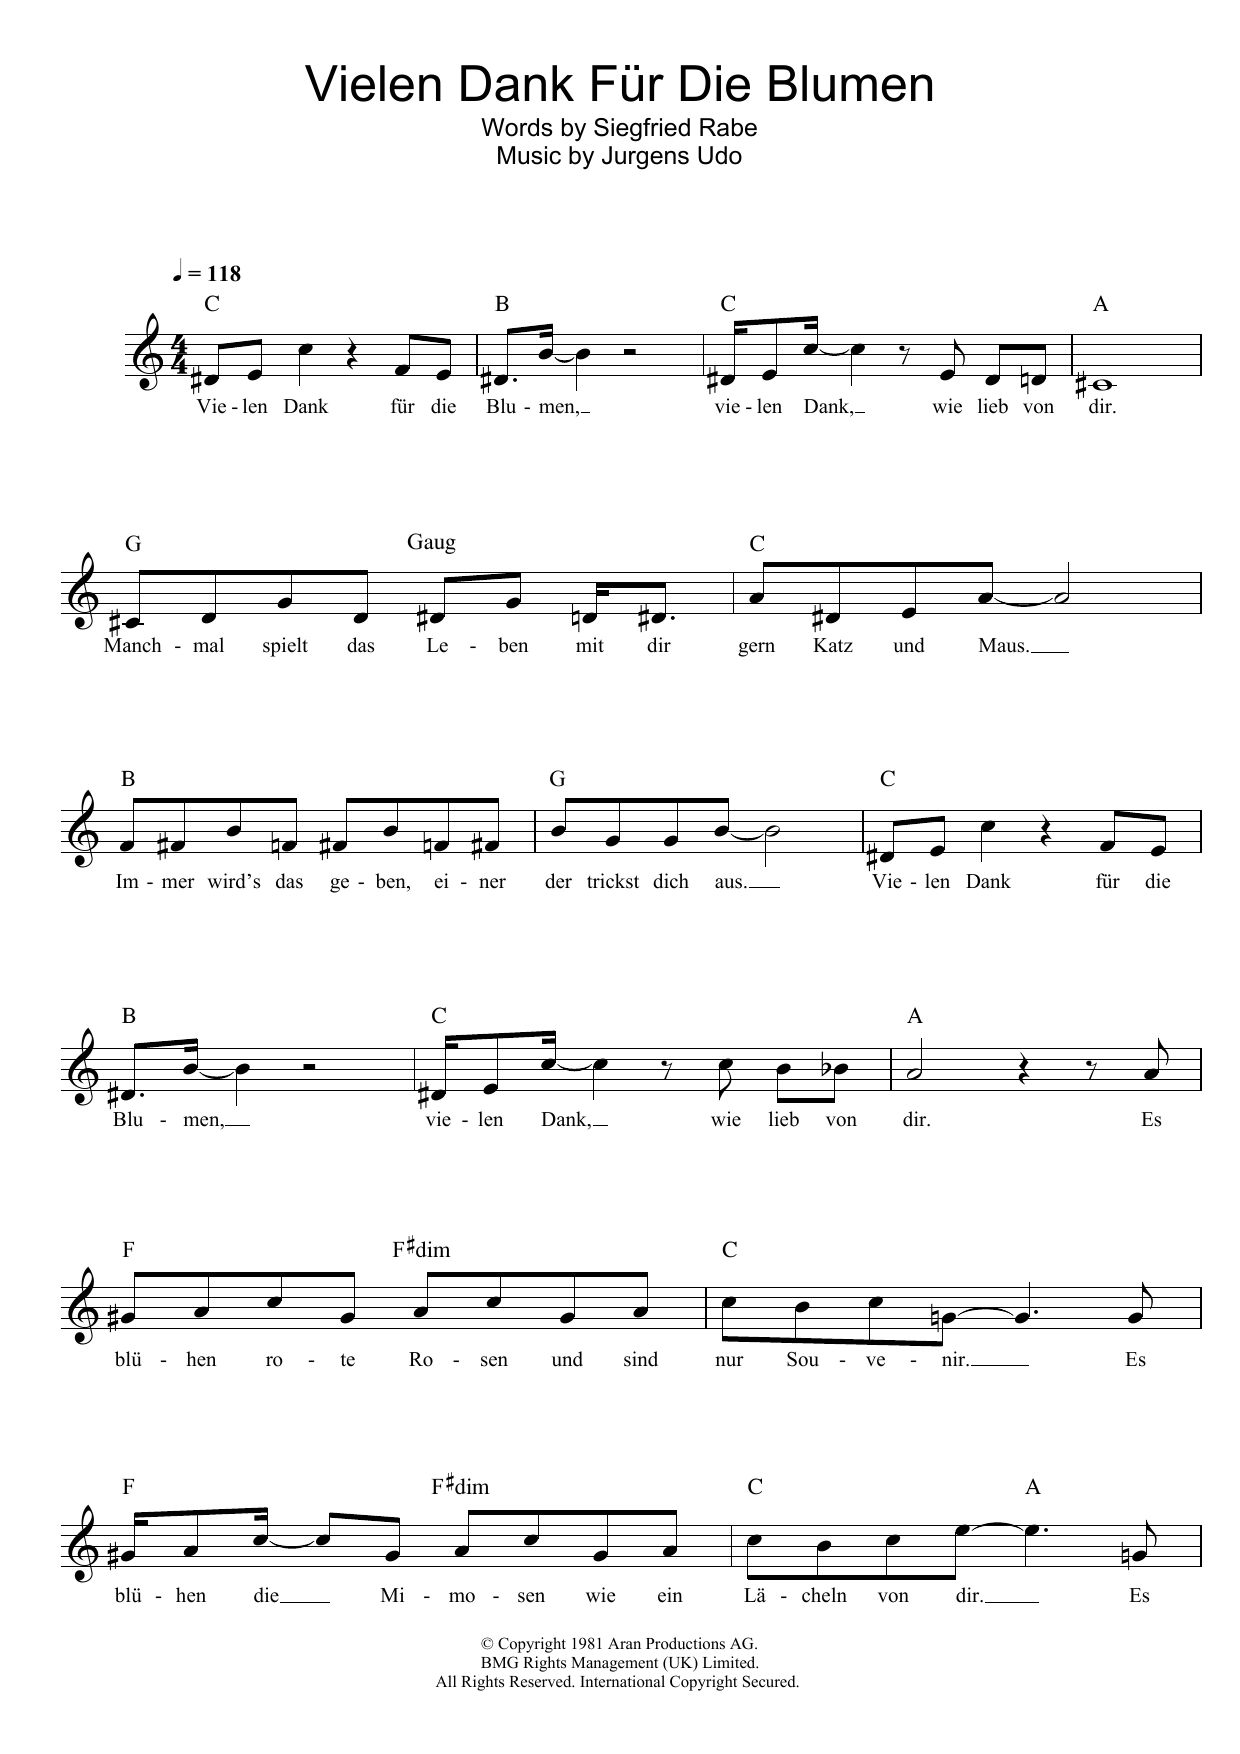 Download Udo Jurgens Vielen Dank Für Die Blumen Sheet Music and learn how to play Melody Line, Lyrics & Chords PDF digital score in minutes